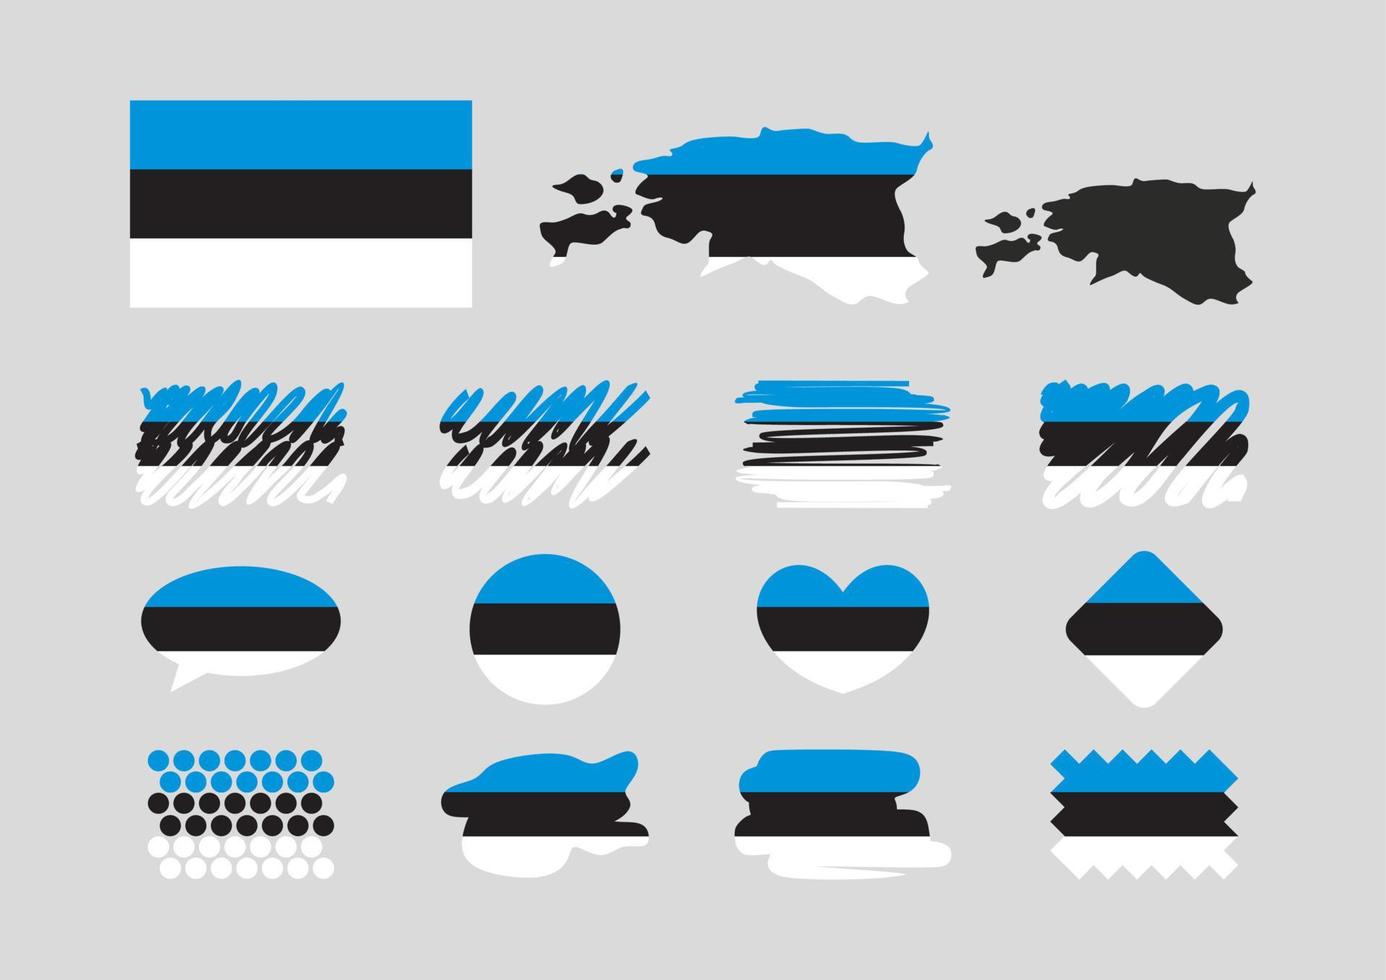 Estonia bandiera impostare, semplice bandiere di Estonia. carta geografica, cuore, pulsante, testo nube, marchio, rombo, scarabocchi, punti. vettore